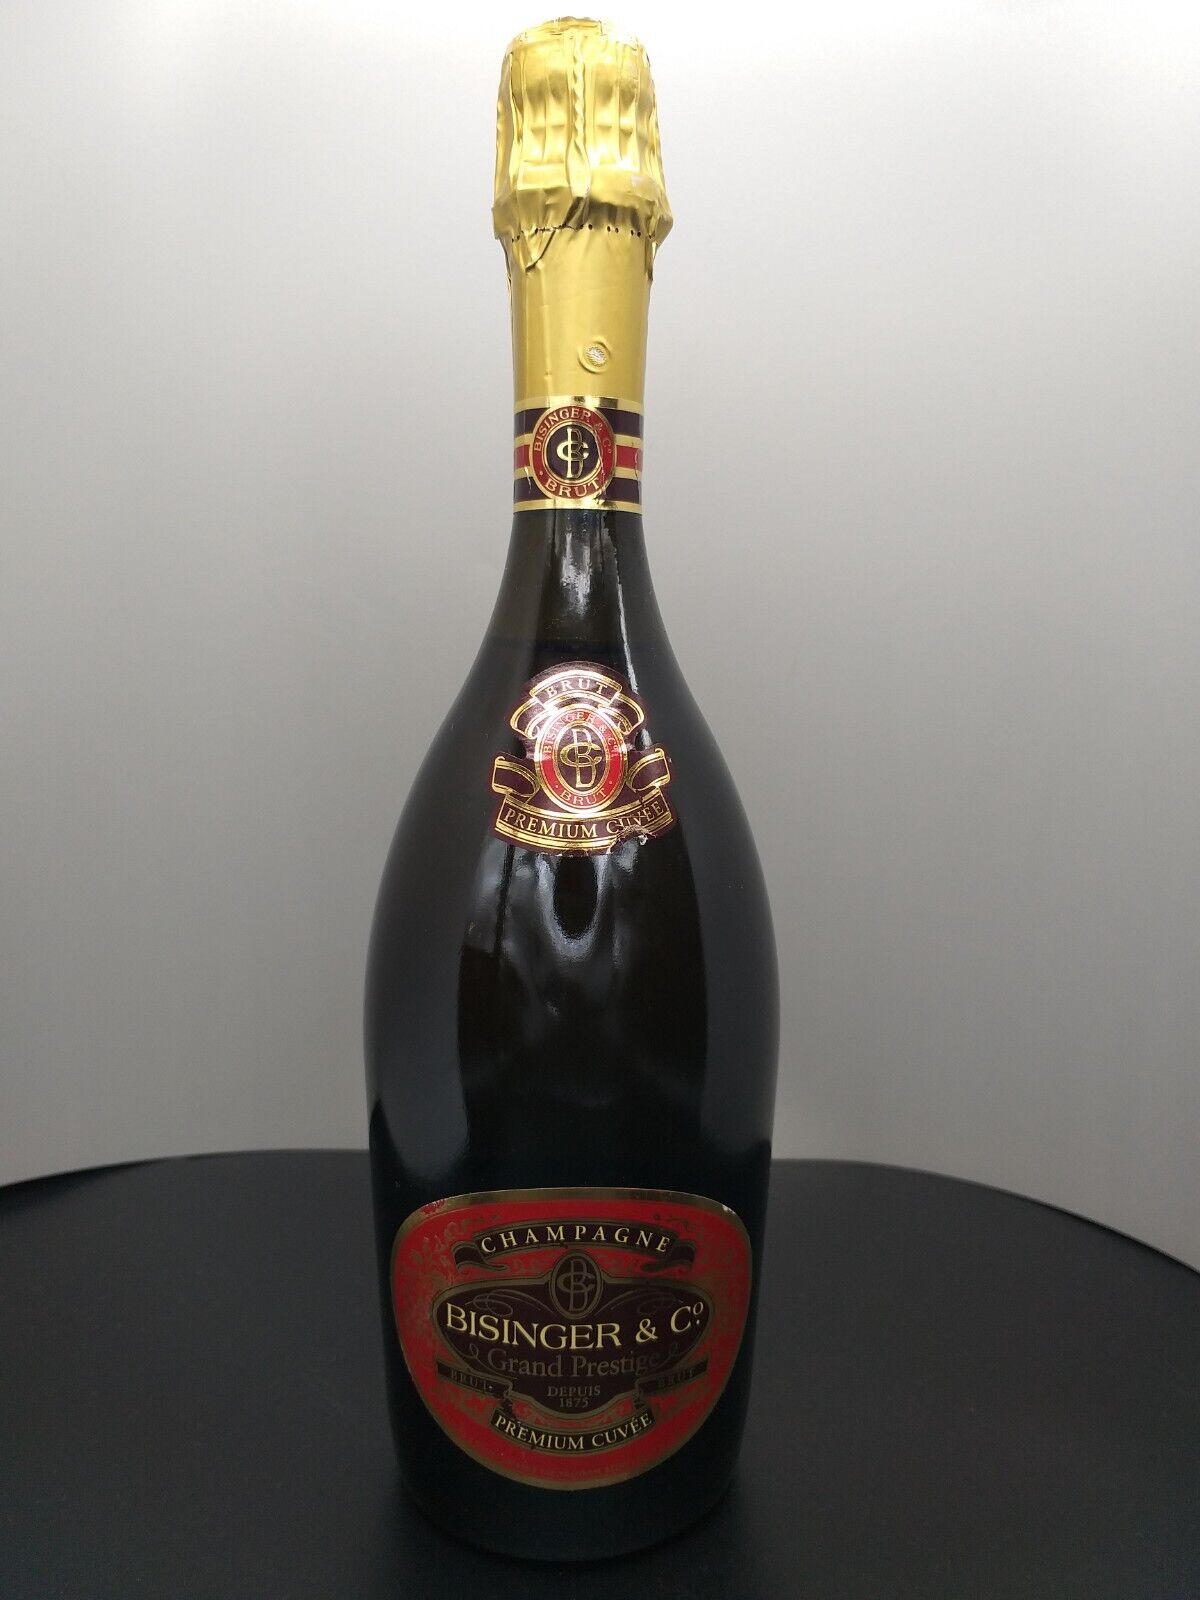 Bissinger Premium Cuvée Brut Champagner 0 75 Liter online kaufen | eBay | Champagner & Sekt